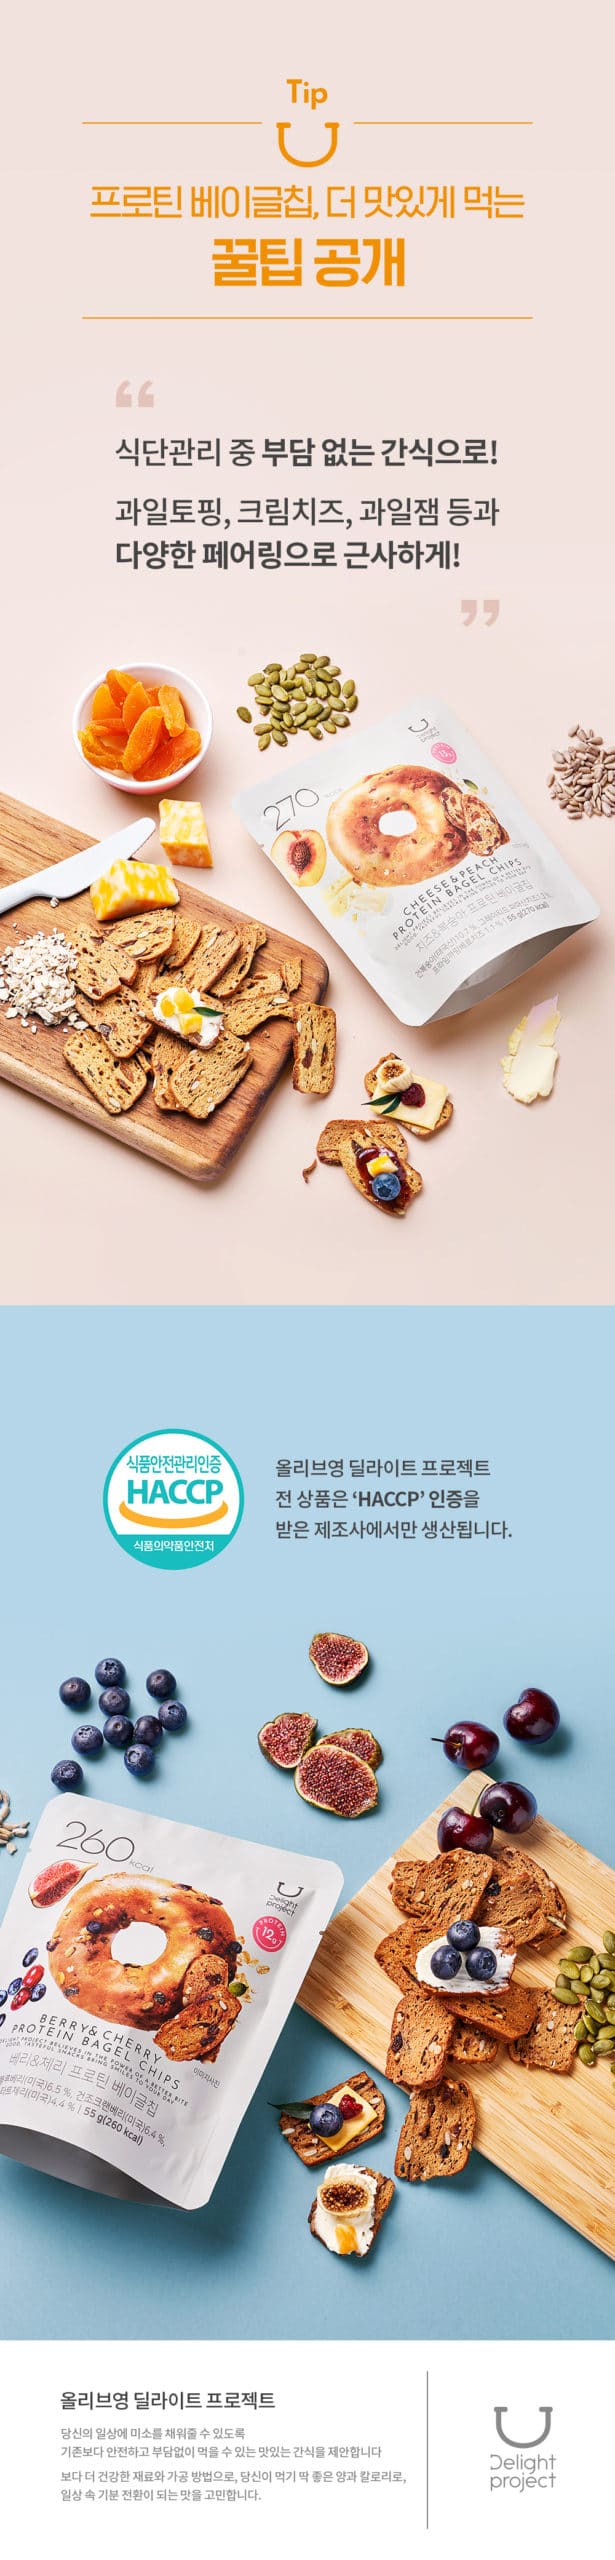 韓國食品-[딜라이트 프로젝트] 프로틴 베이글칩 (베리 & 체리) 55g